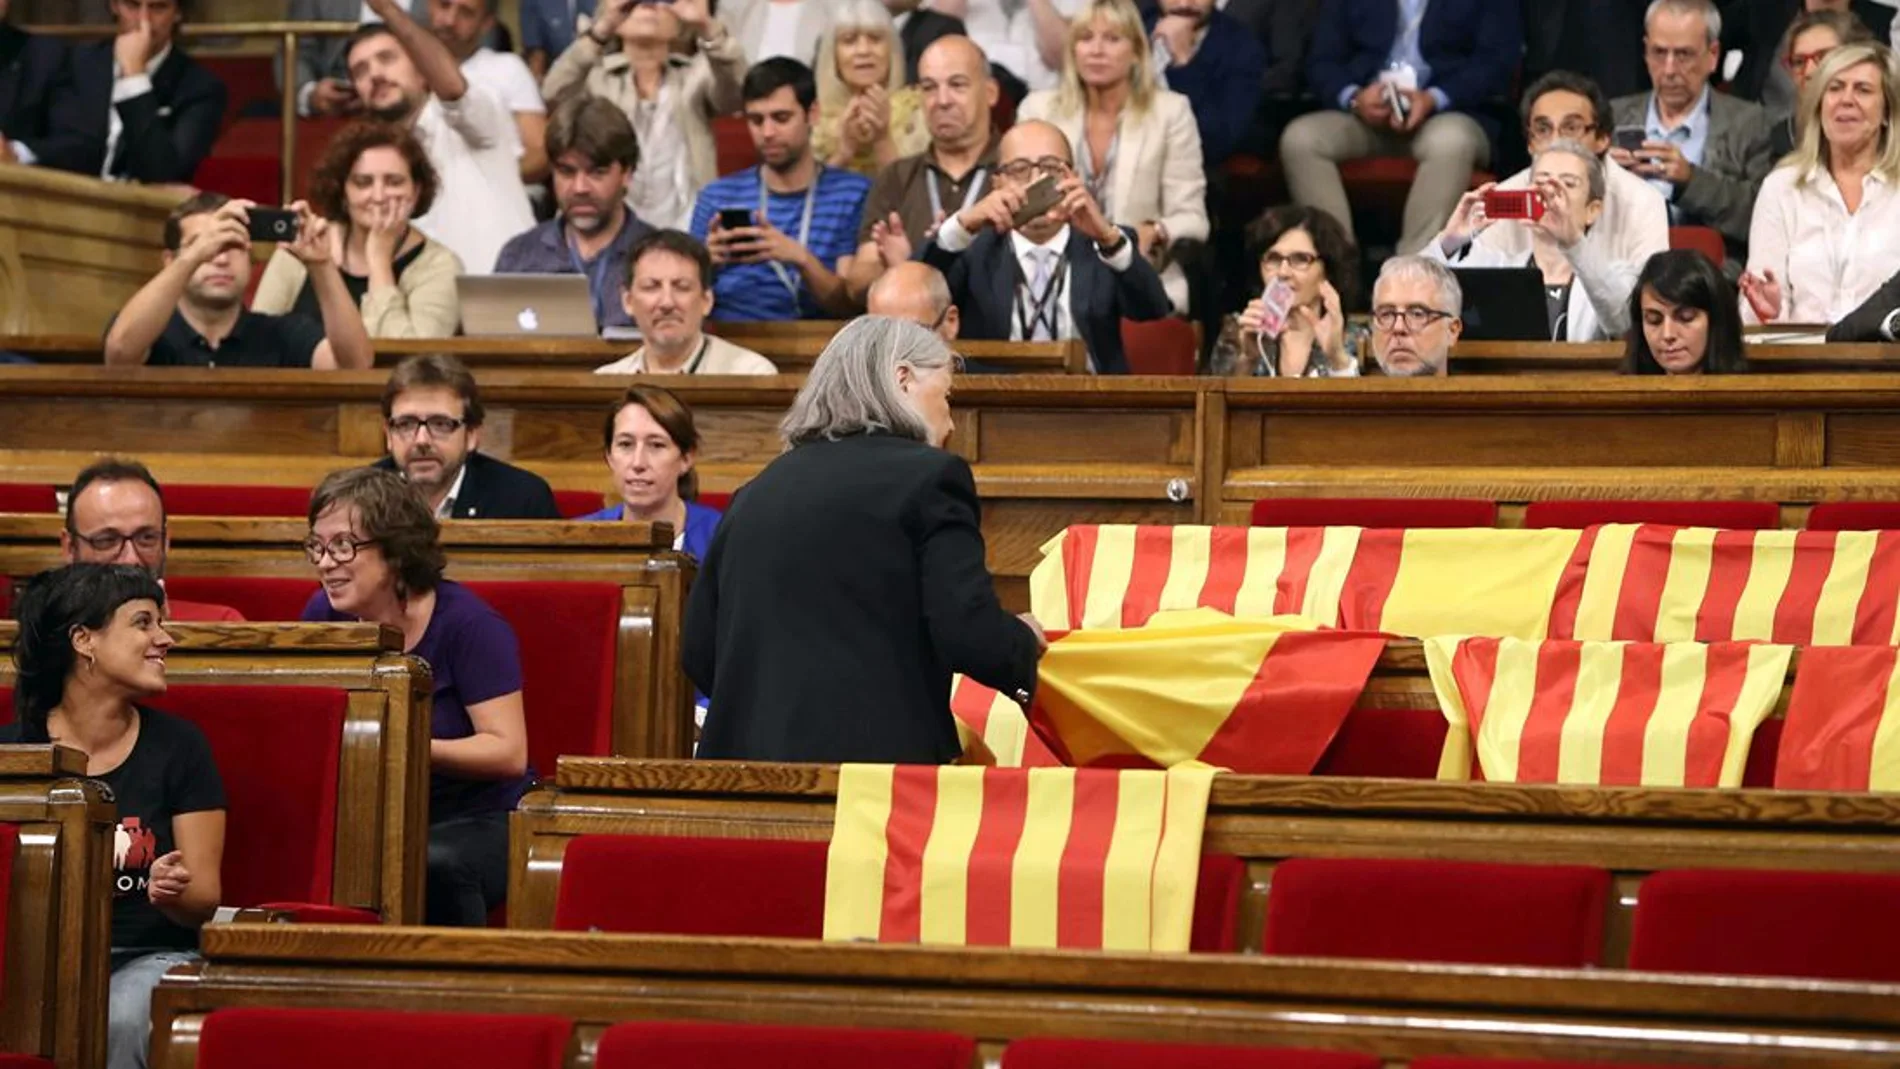  Àngels Martínez retirando las banderas de España en el Parlament